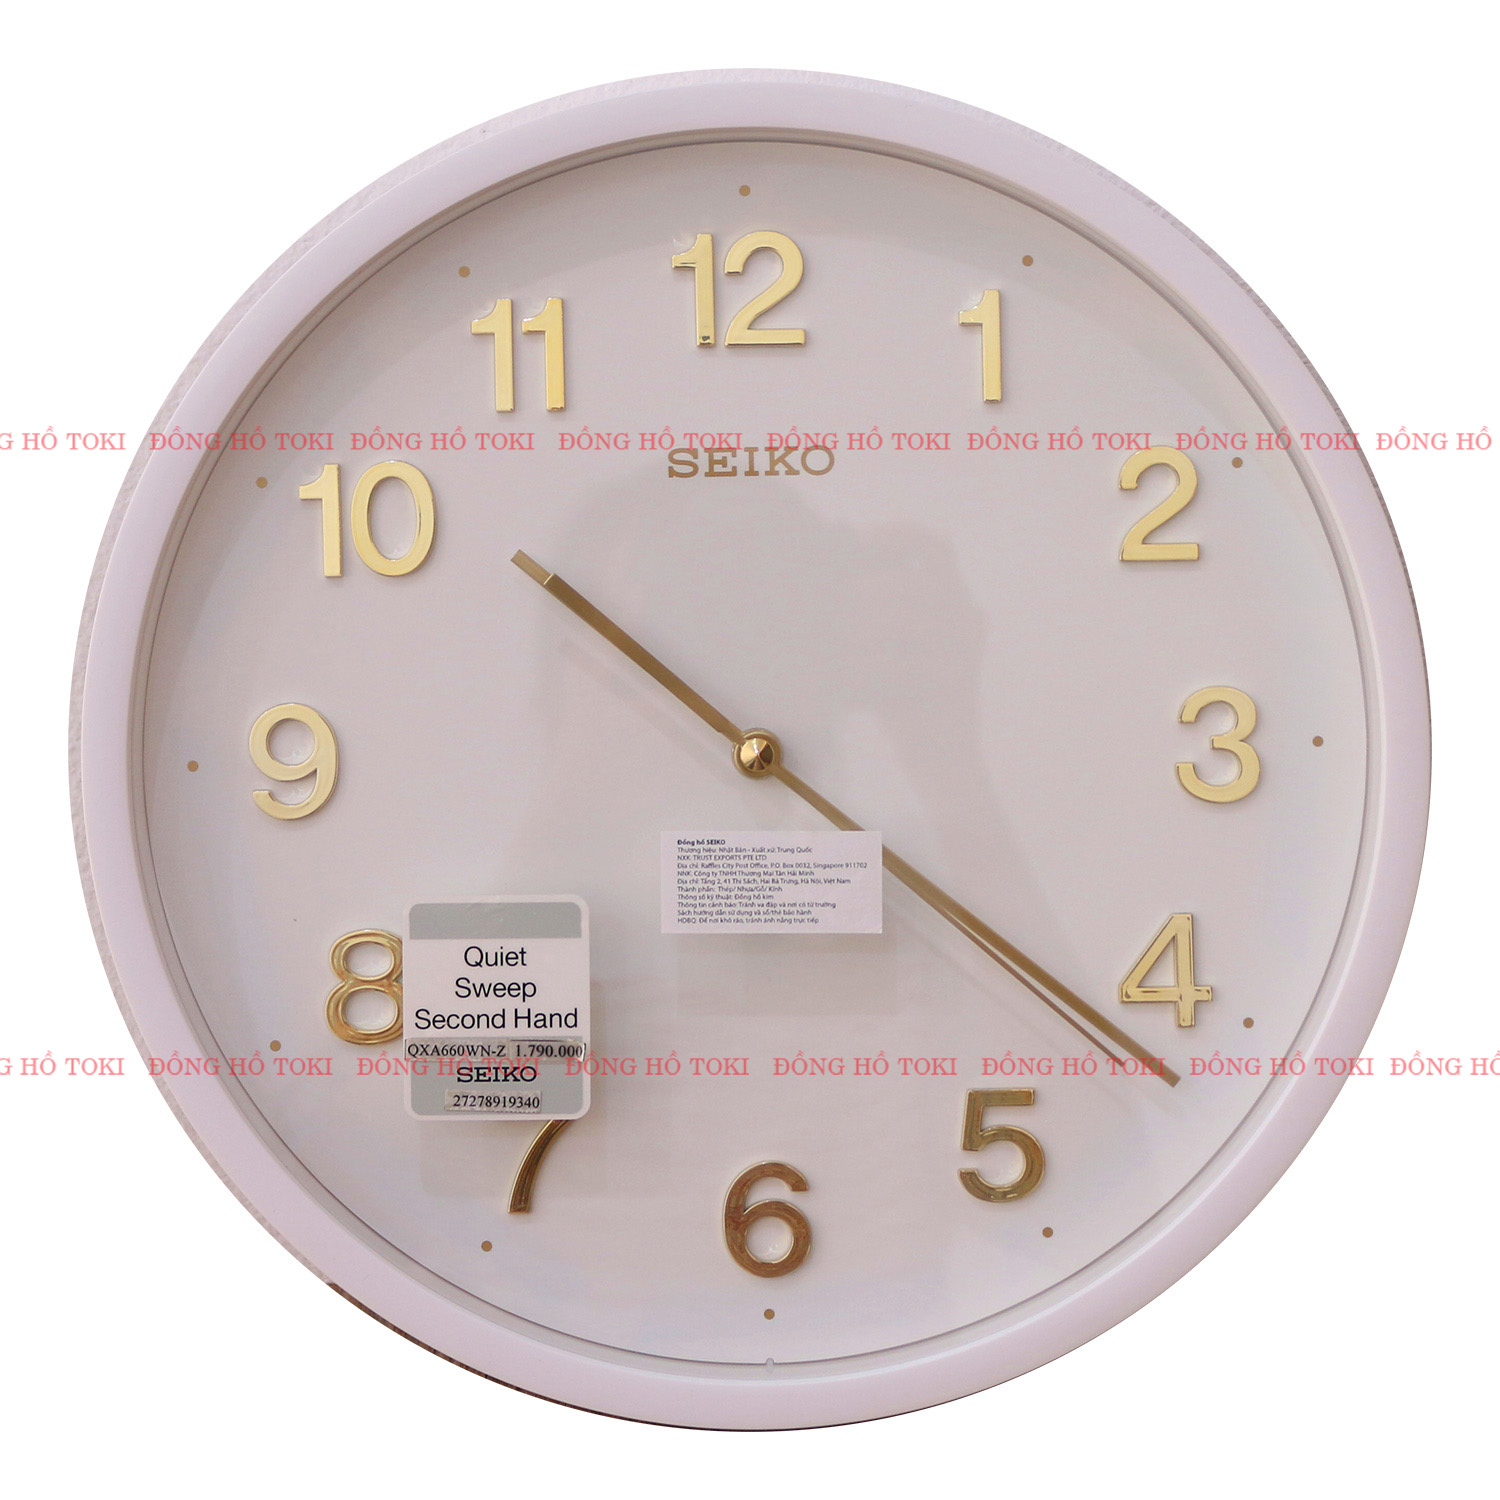 Đồng hồ treo tường Seiko, RHYTHM chính hãng chất lượng, giá rẻ